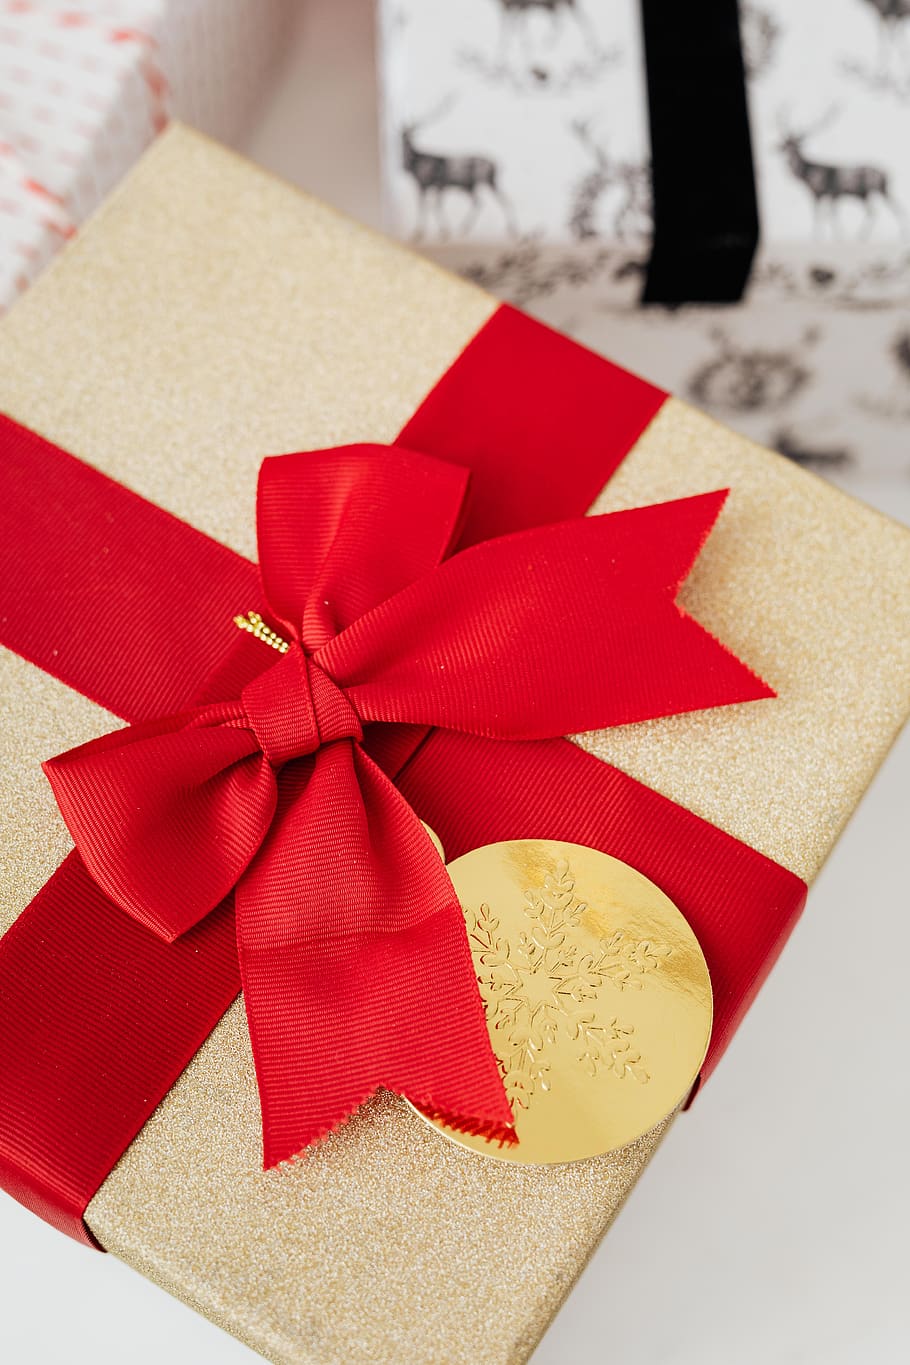 regalo, navidad, regalos, diciembre, vacaciones, festivo, alegre, arco, presente, caja